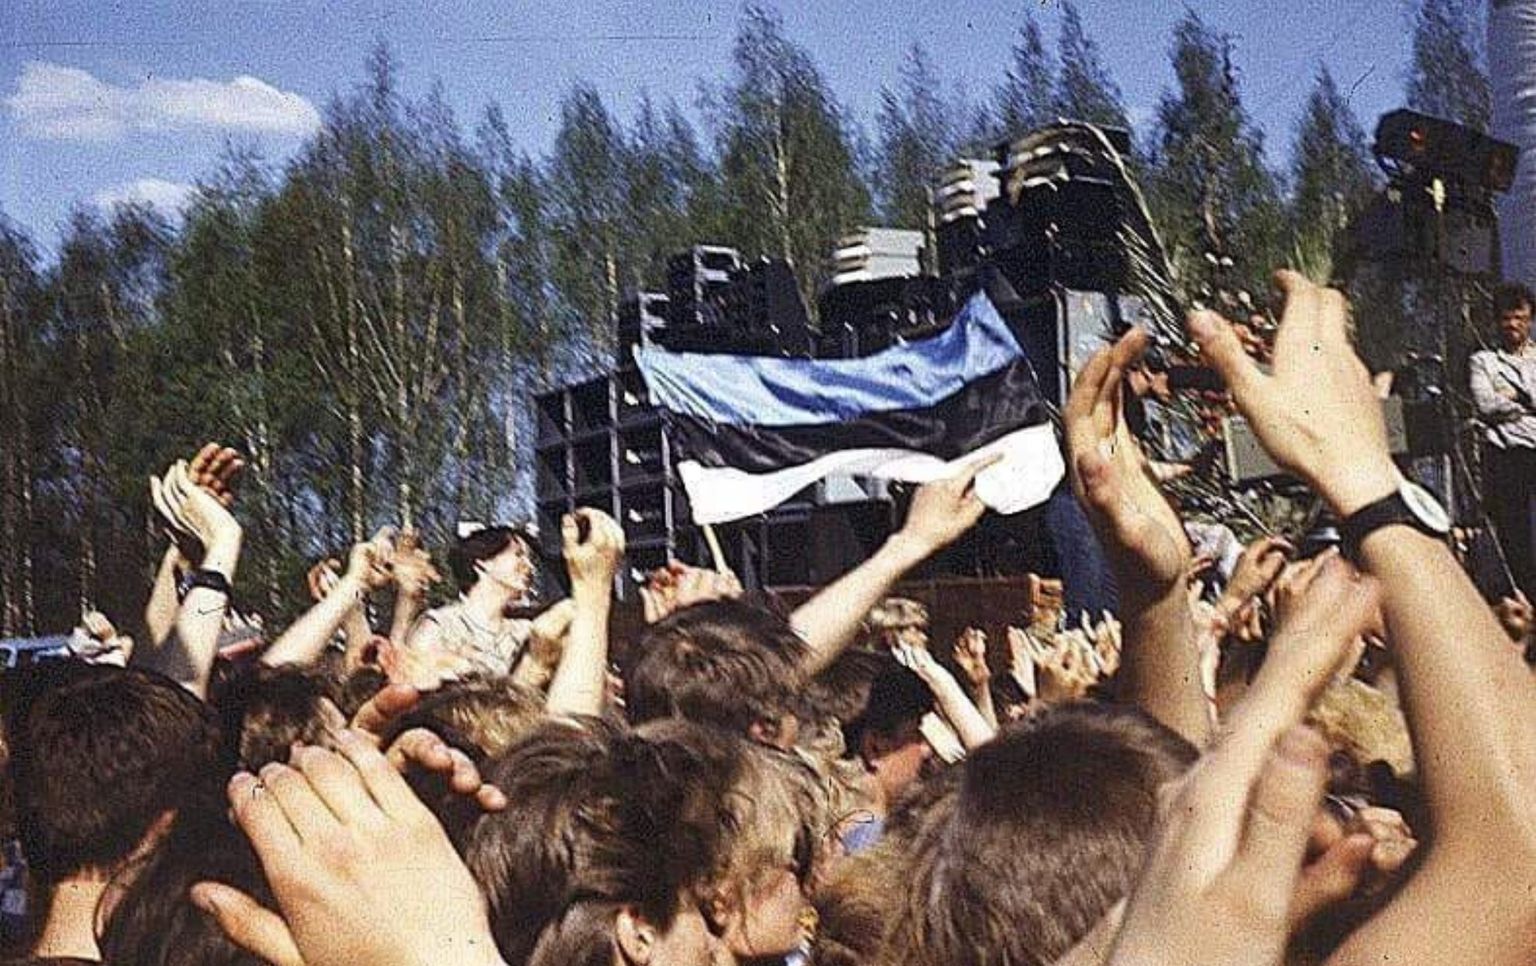 Sinimustvalge lipu lehvitamine 14. mail 1988 Tartu lauluväljakul.